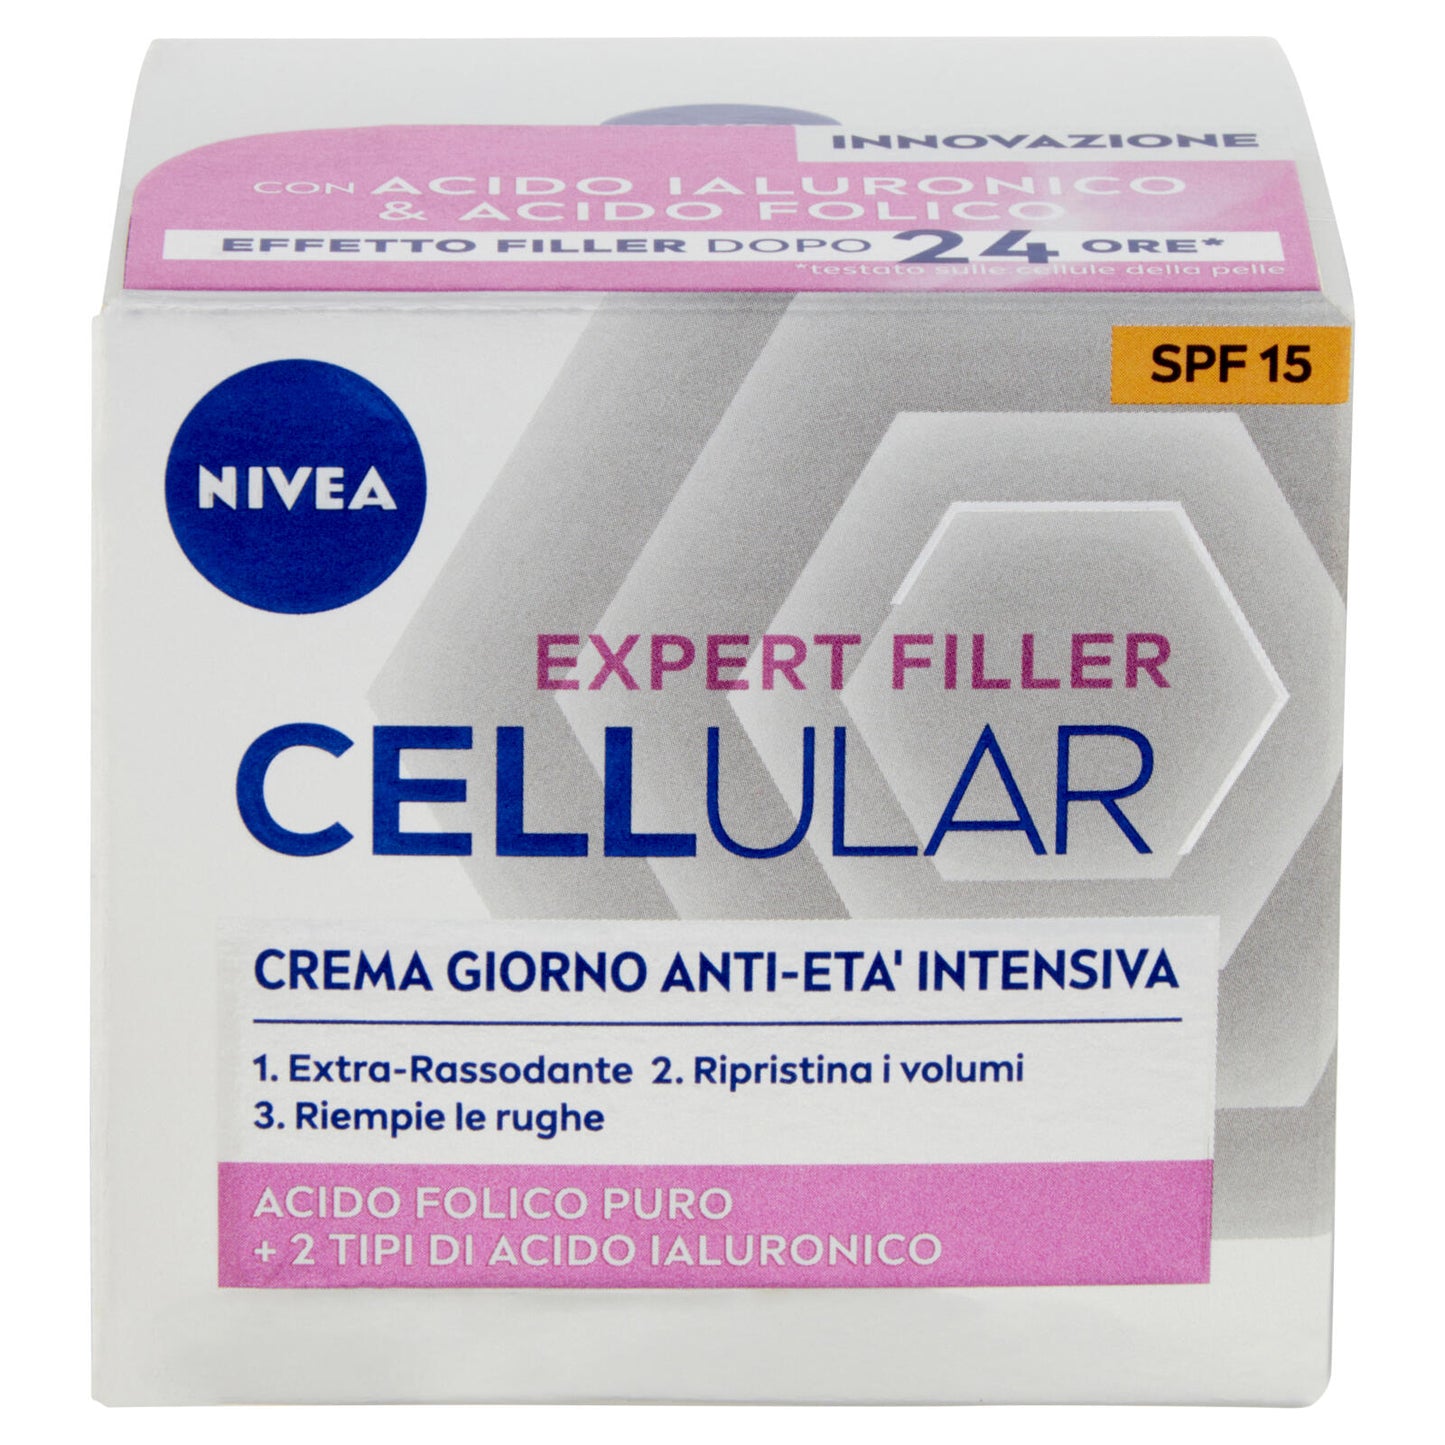 Nivea Cellular Expert Filler Crema Giorno Anti-Età Intensiva SPF 15 50 ml